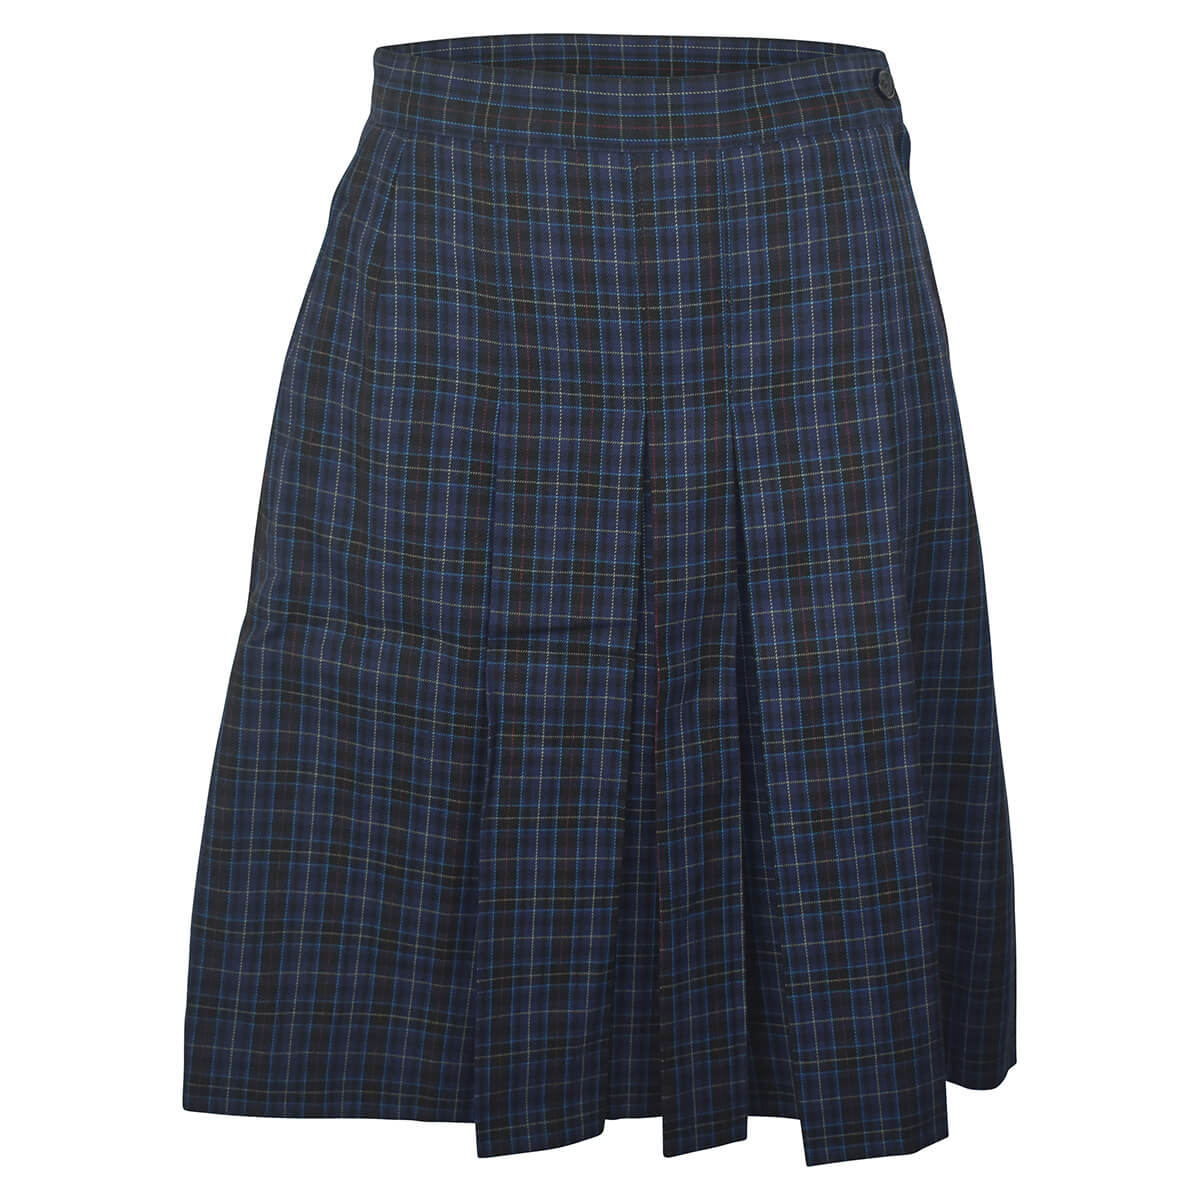 Truganina P-9 Winter Skirt | Truganina P-9 College | Noone